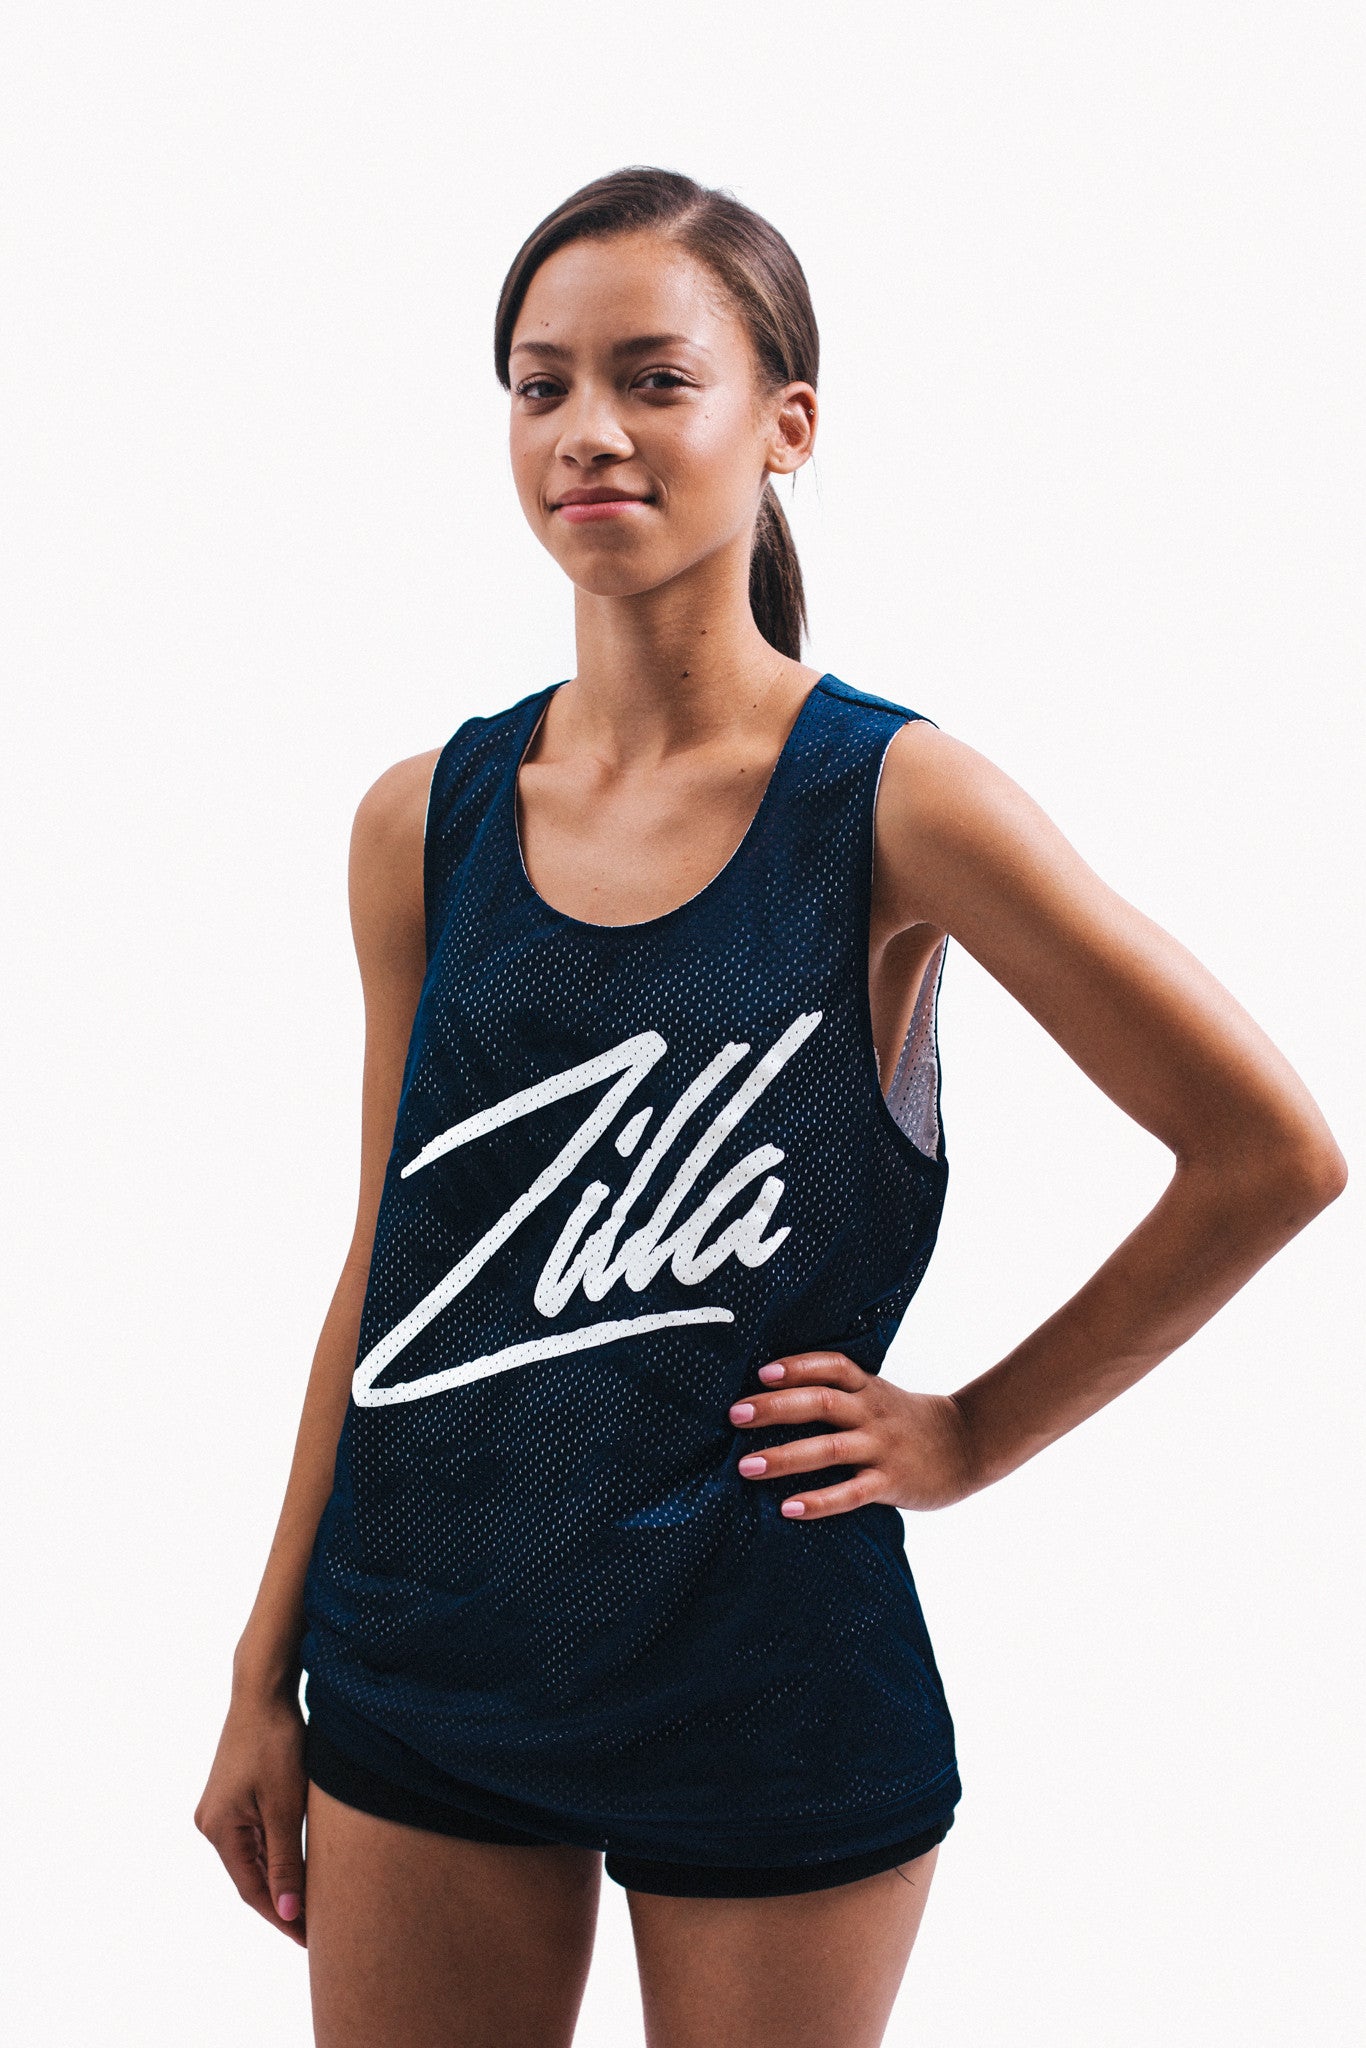 Zilla Basketball Jersey (Reversible)